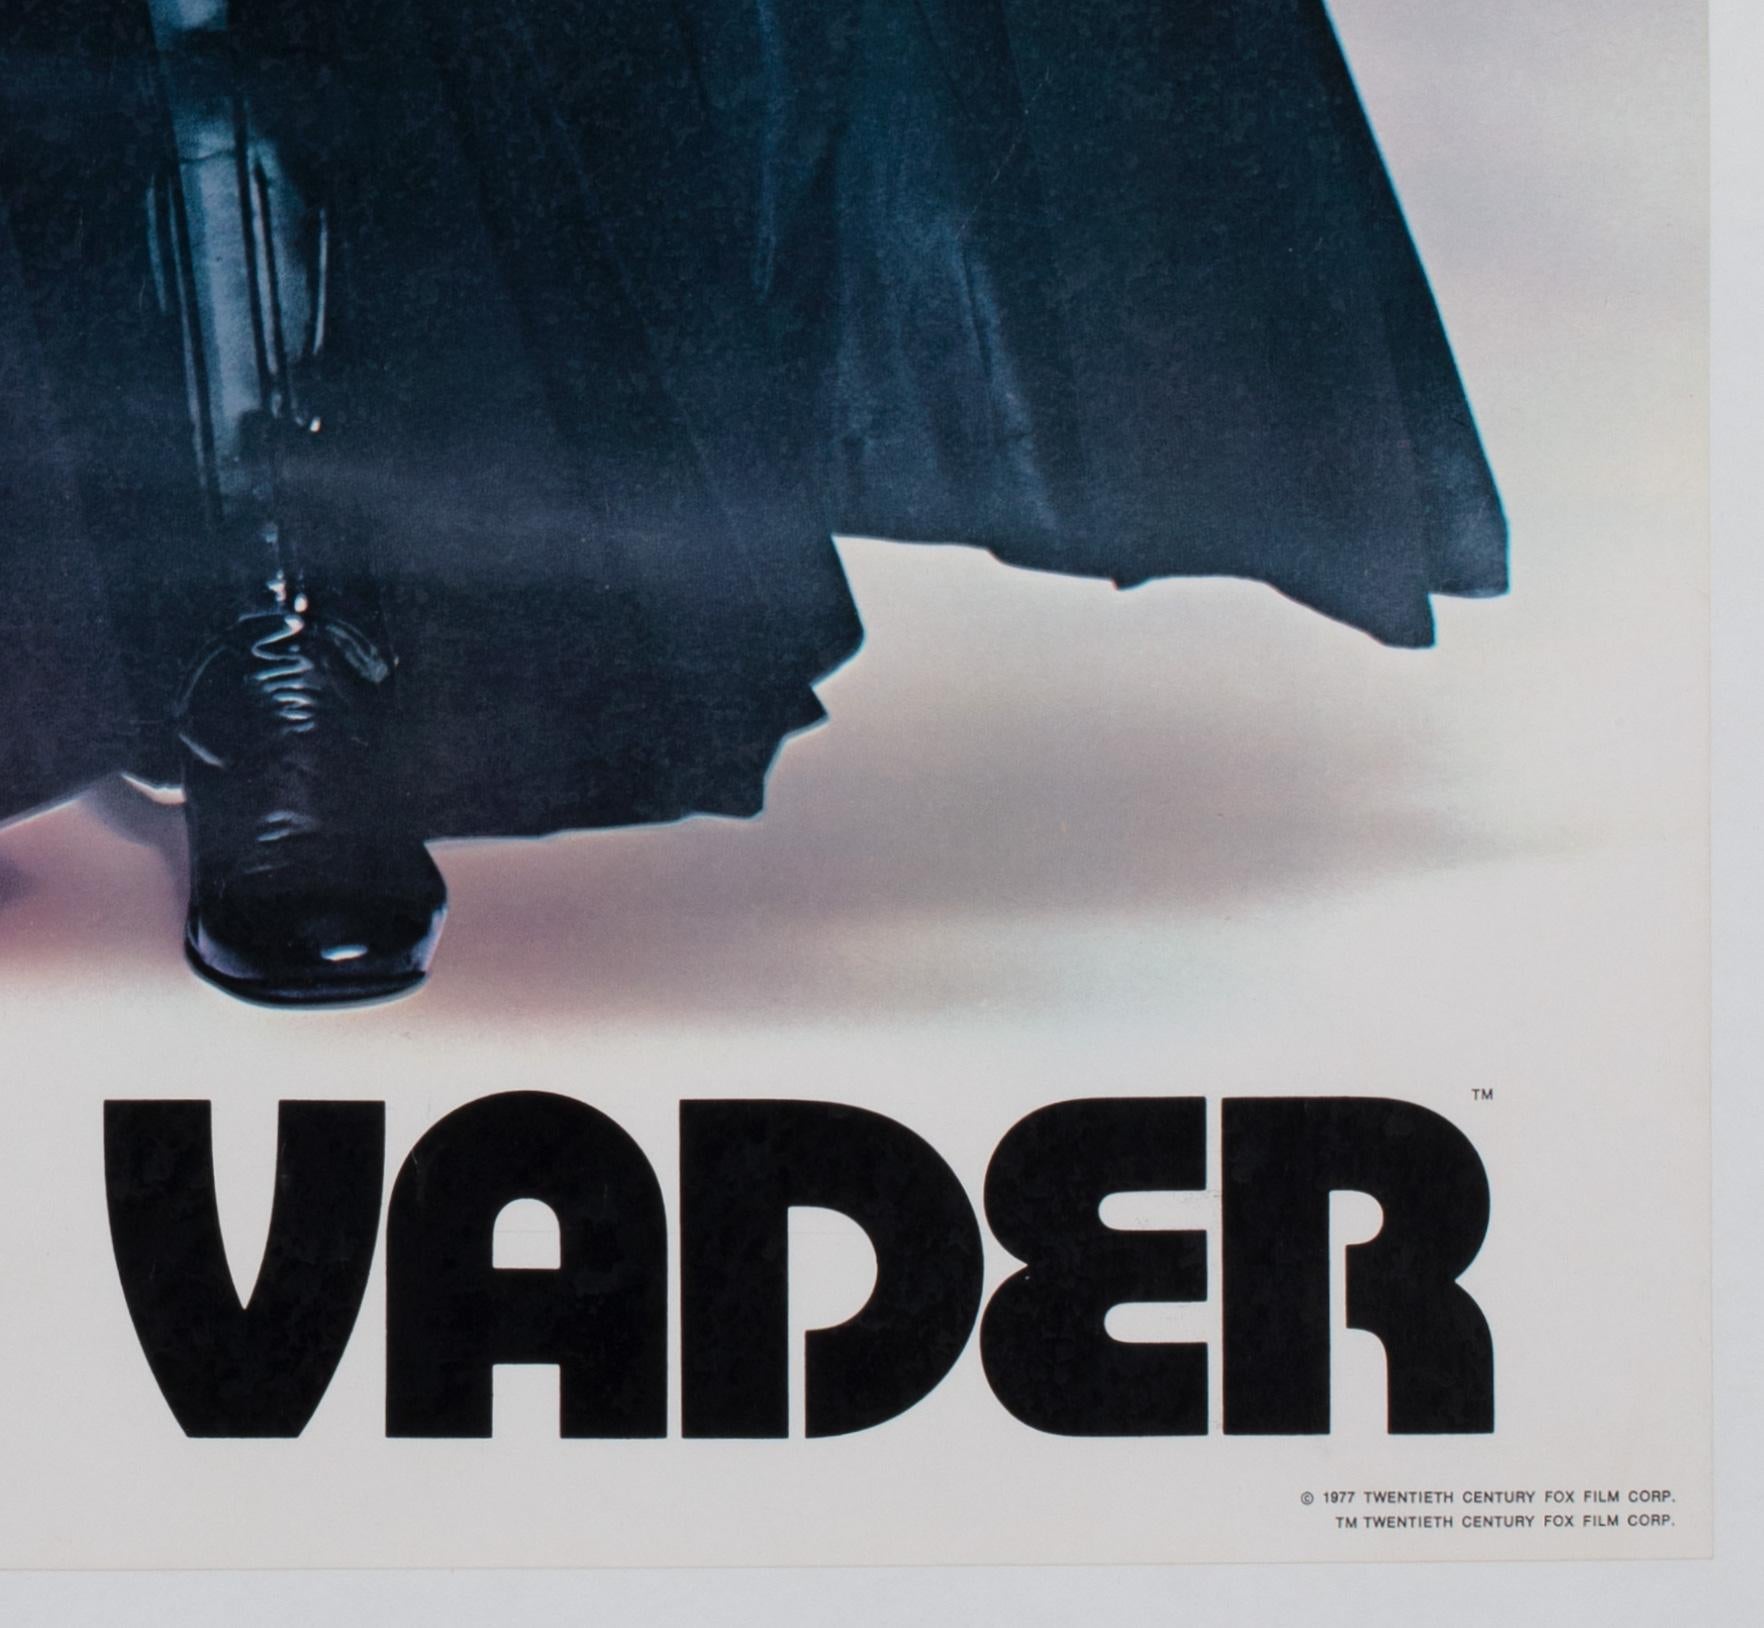 Star Wars Darth Vader 1977 Vintage Factor Inc Commercial Poster For Sale 1